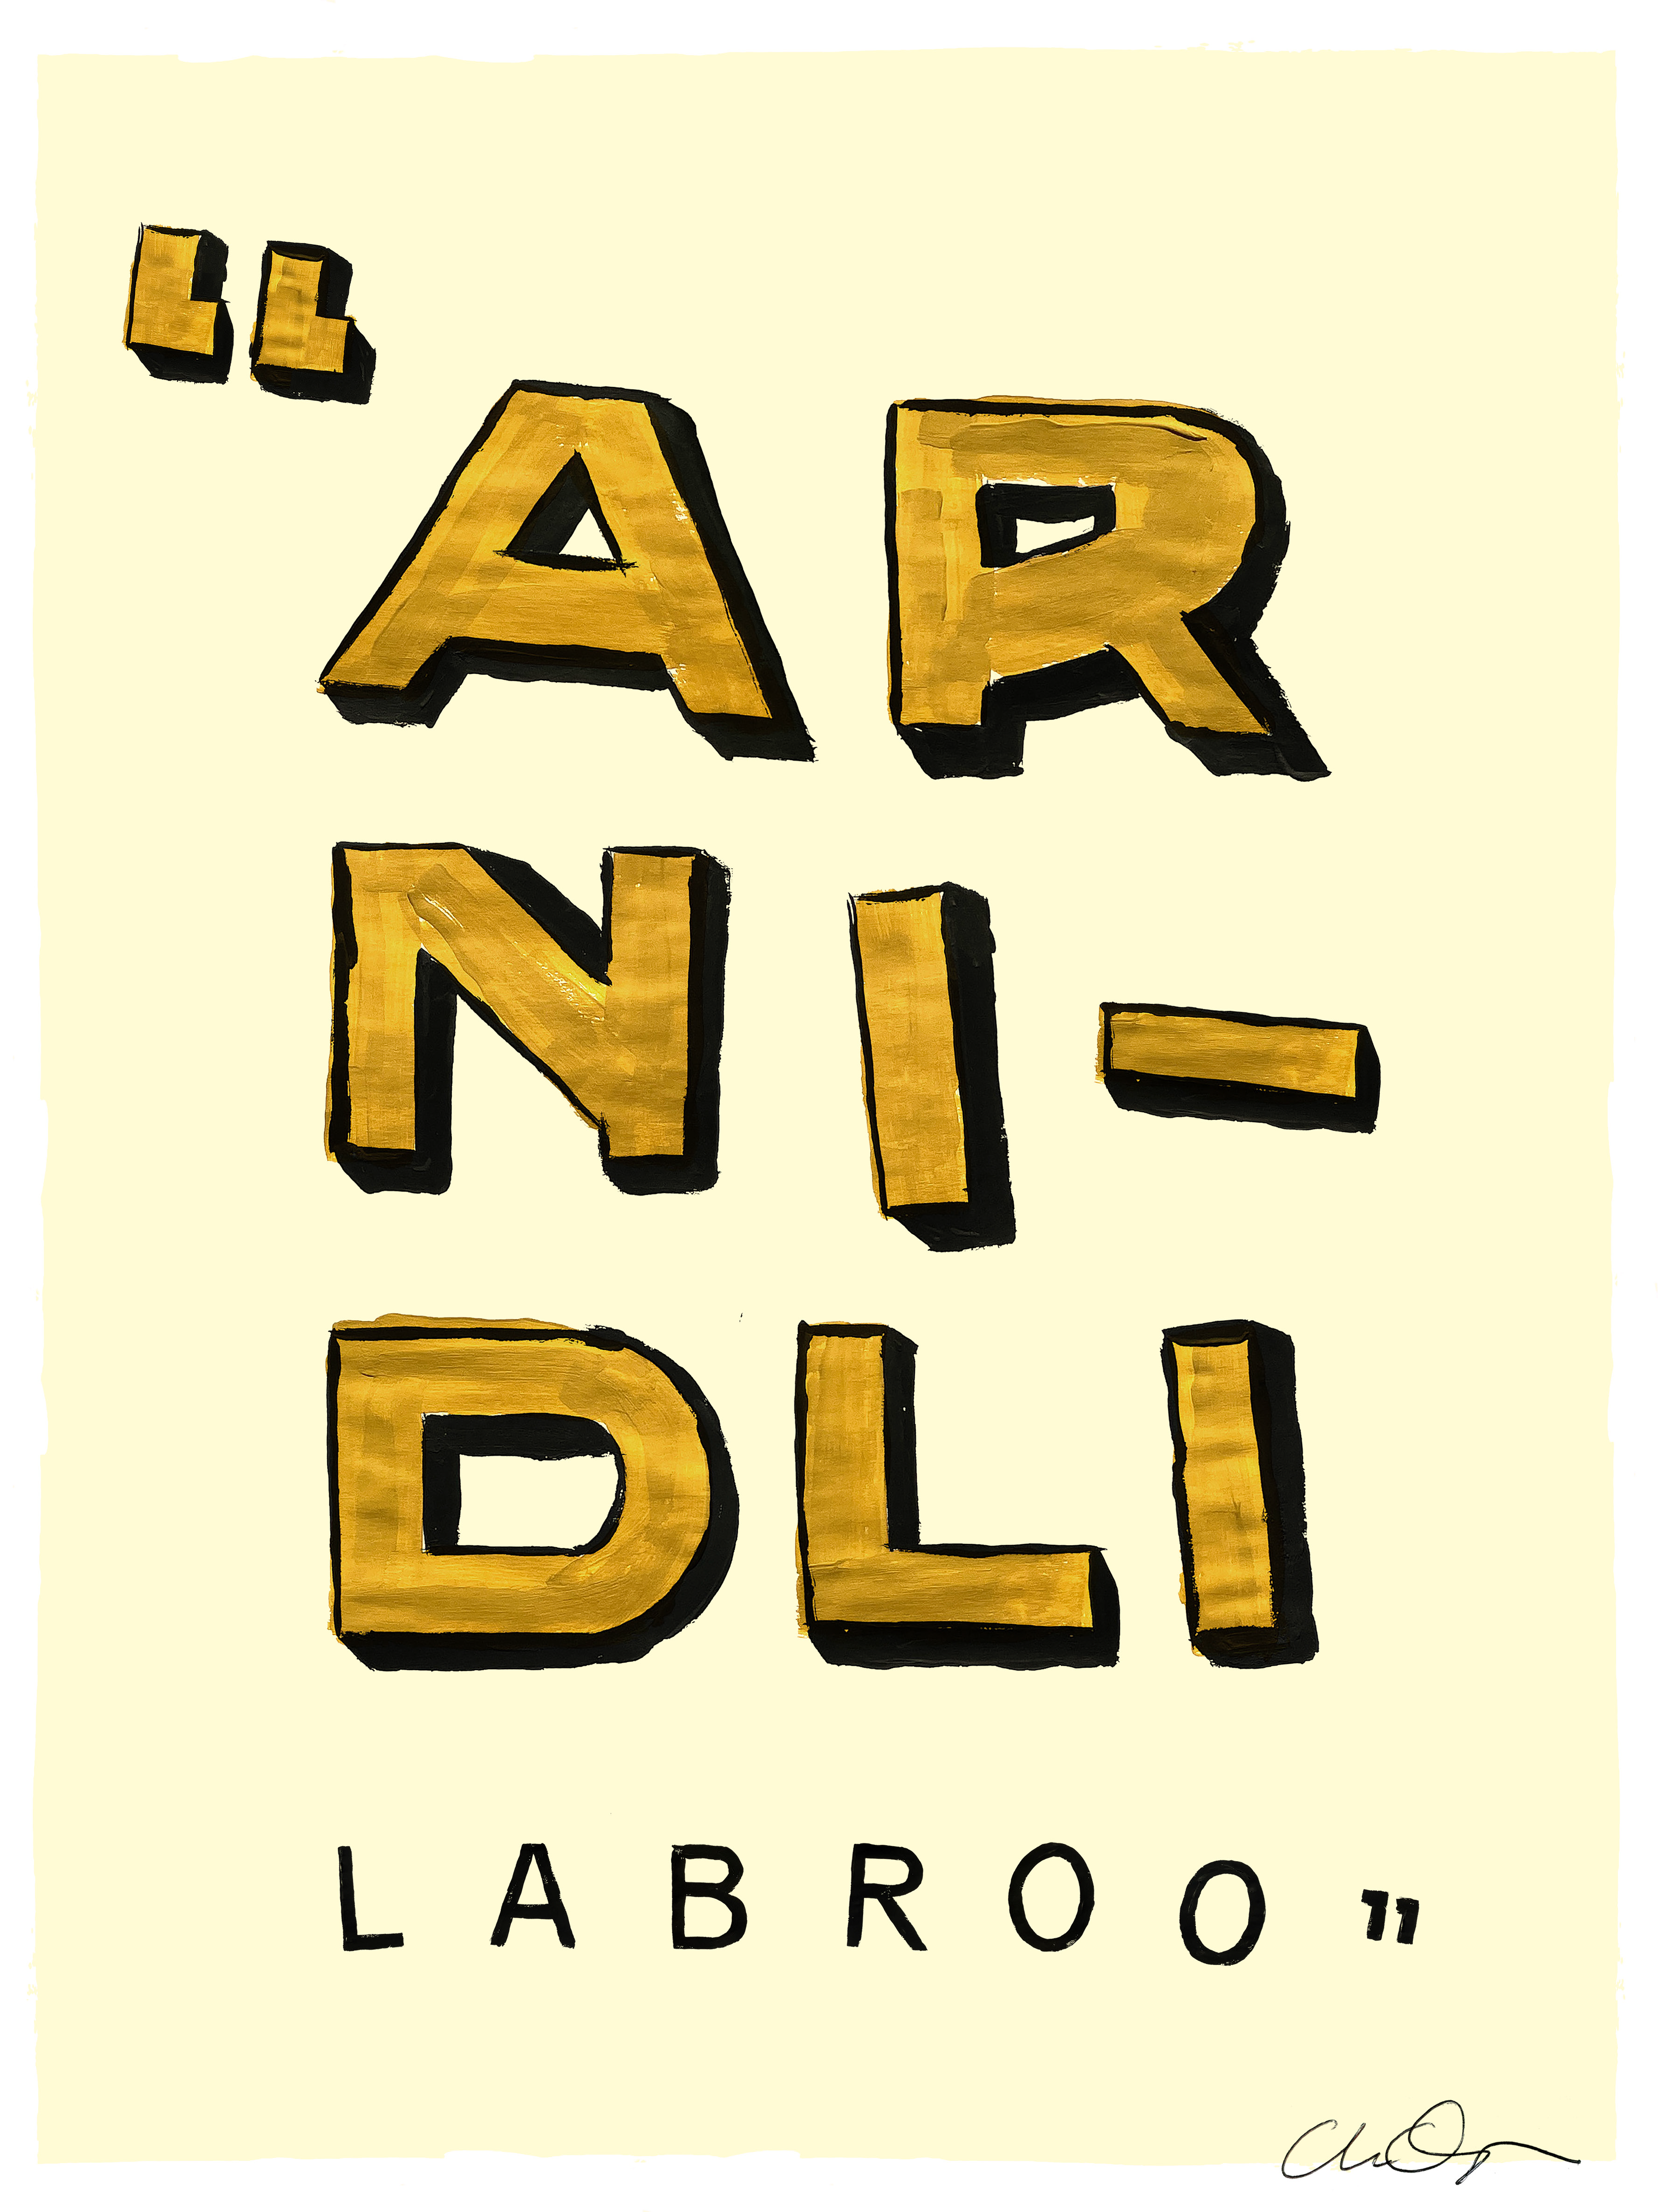 LABROO / Rinaldi Barolo – 30×40 cm